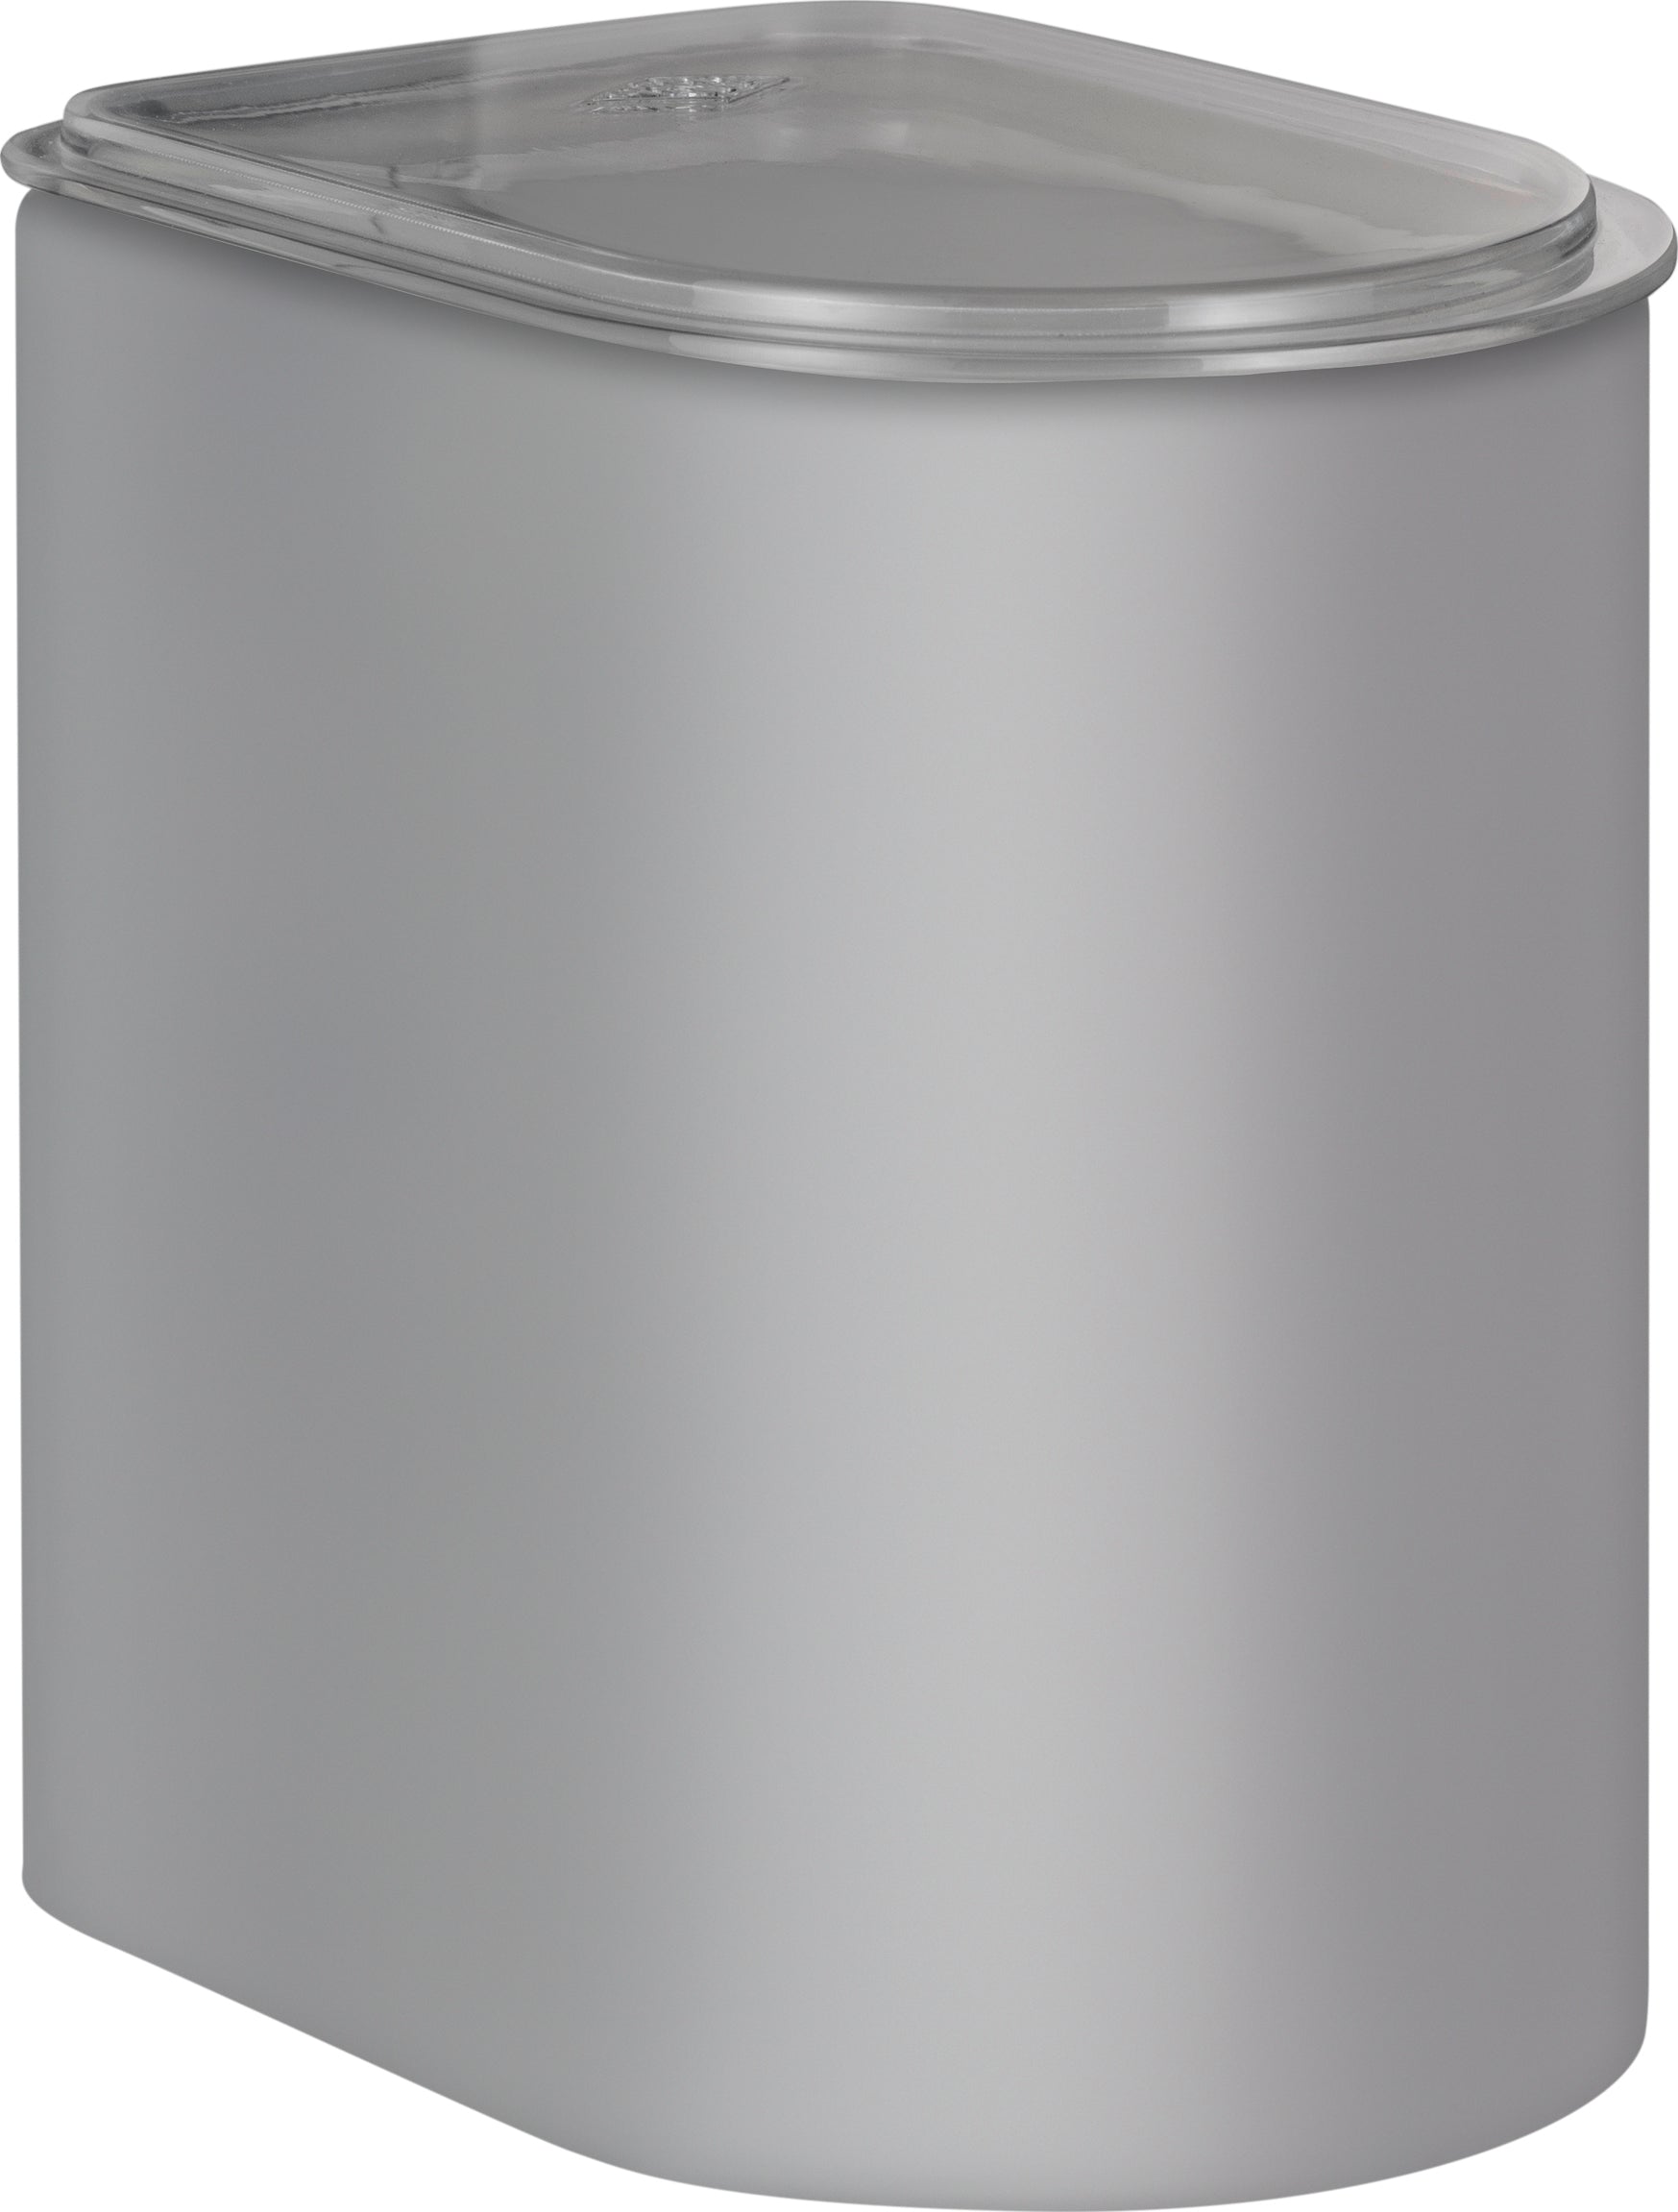 WESCO CANISTER 2,2 litru s akrylovým víkem, chladný šedý matný